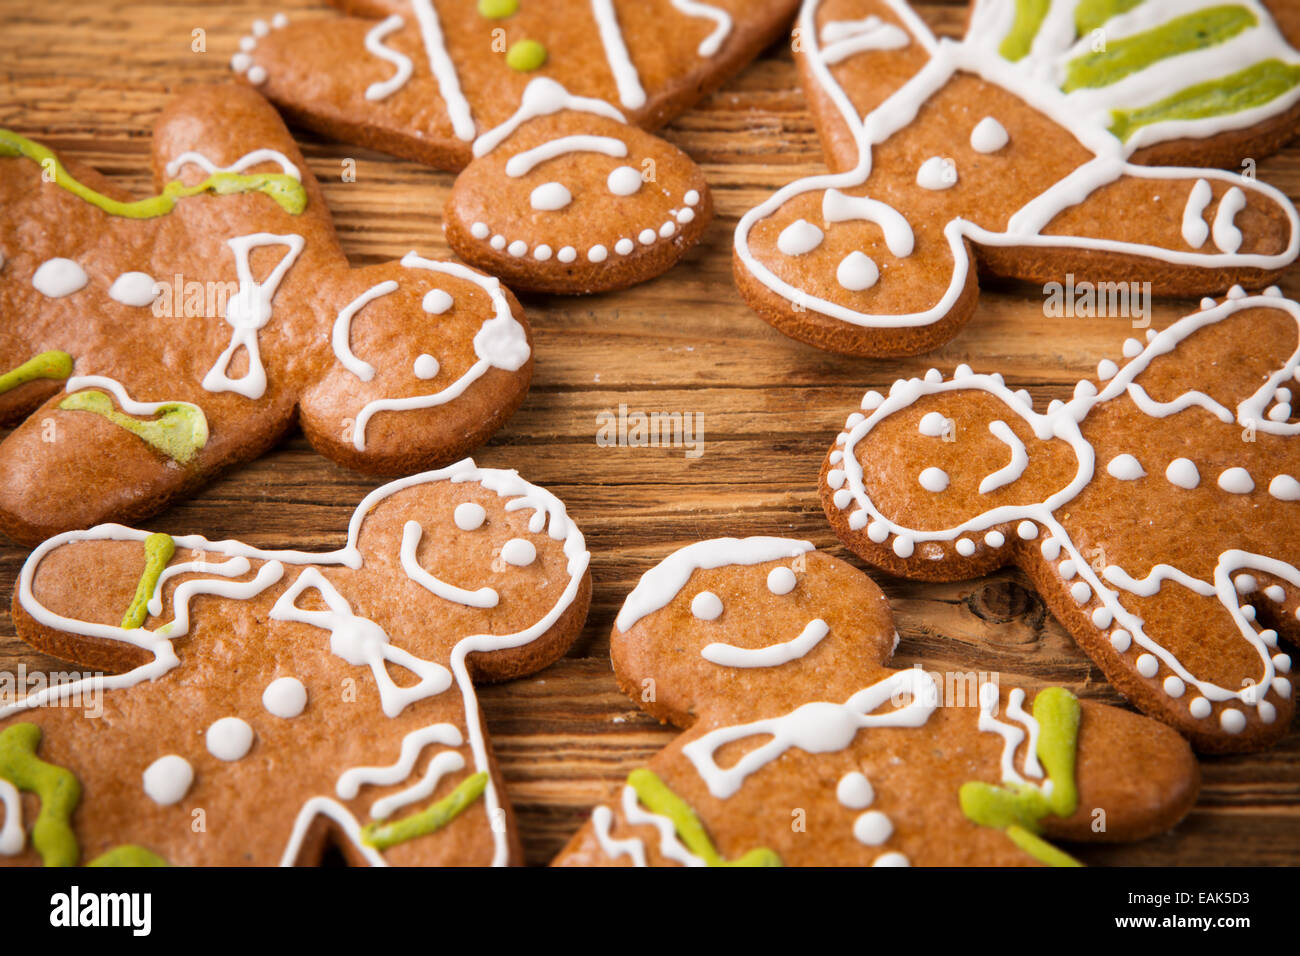 Biscotti Di Natale Panpepato.Concetto Di Natale Con I Tradizionali Biscotti Di Panpepato Su Legno Foto Stock Alamy